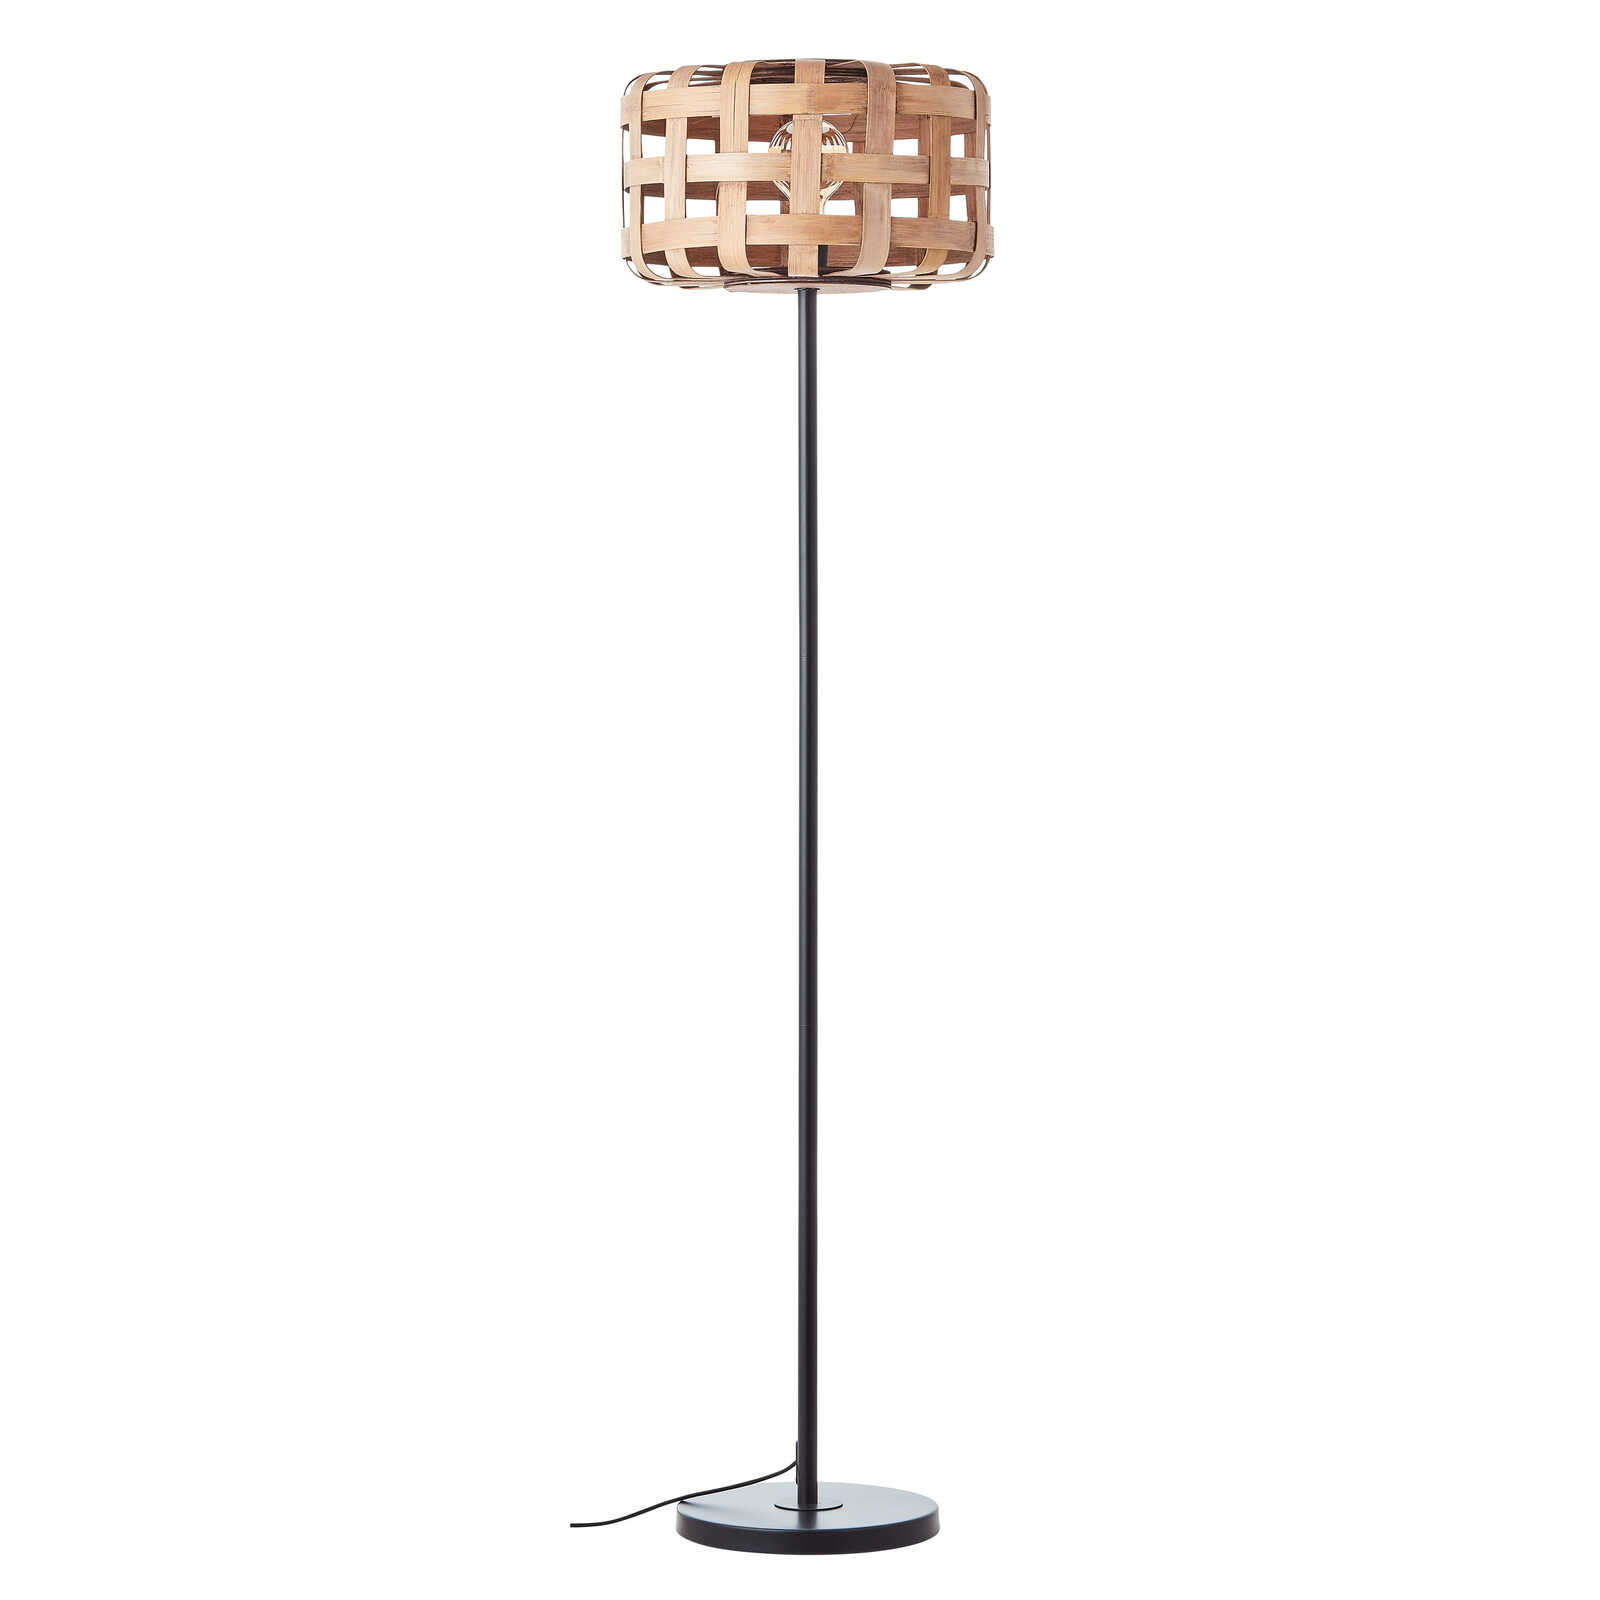             Metal floor lamp - Wilhelm 5 - Brown
        